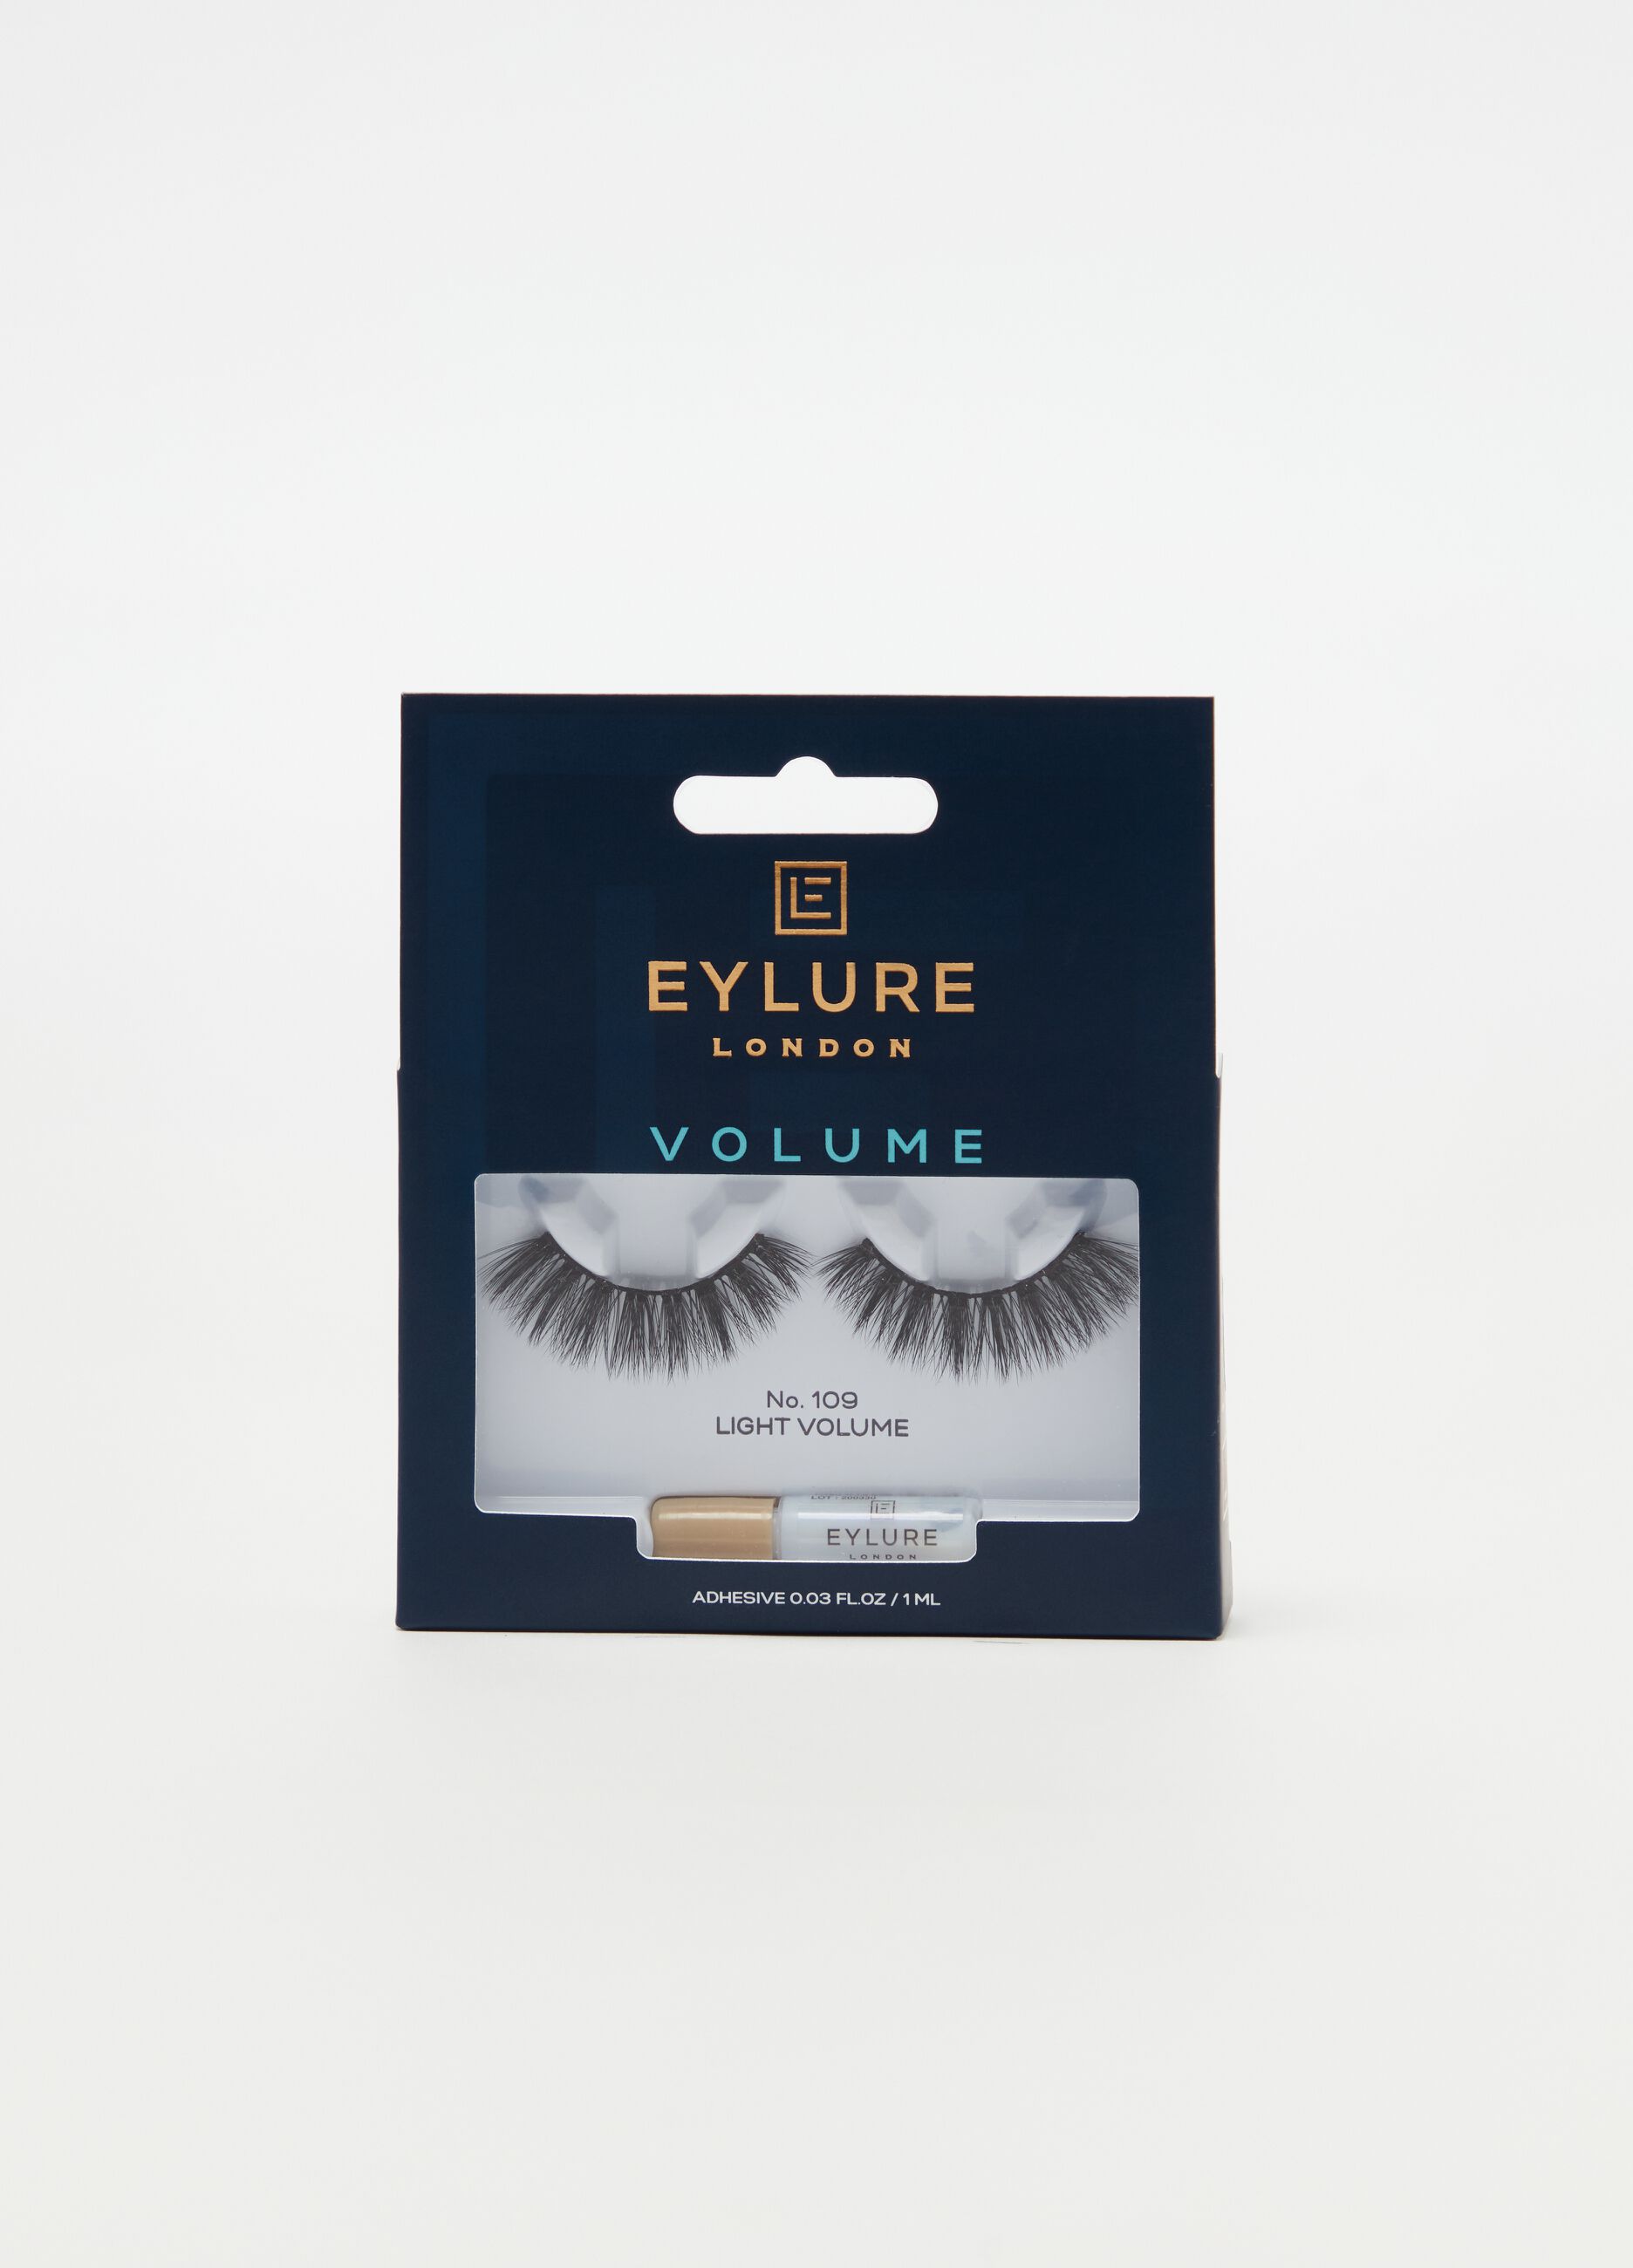 Volume 109 false eyelashes